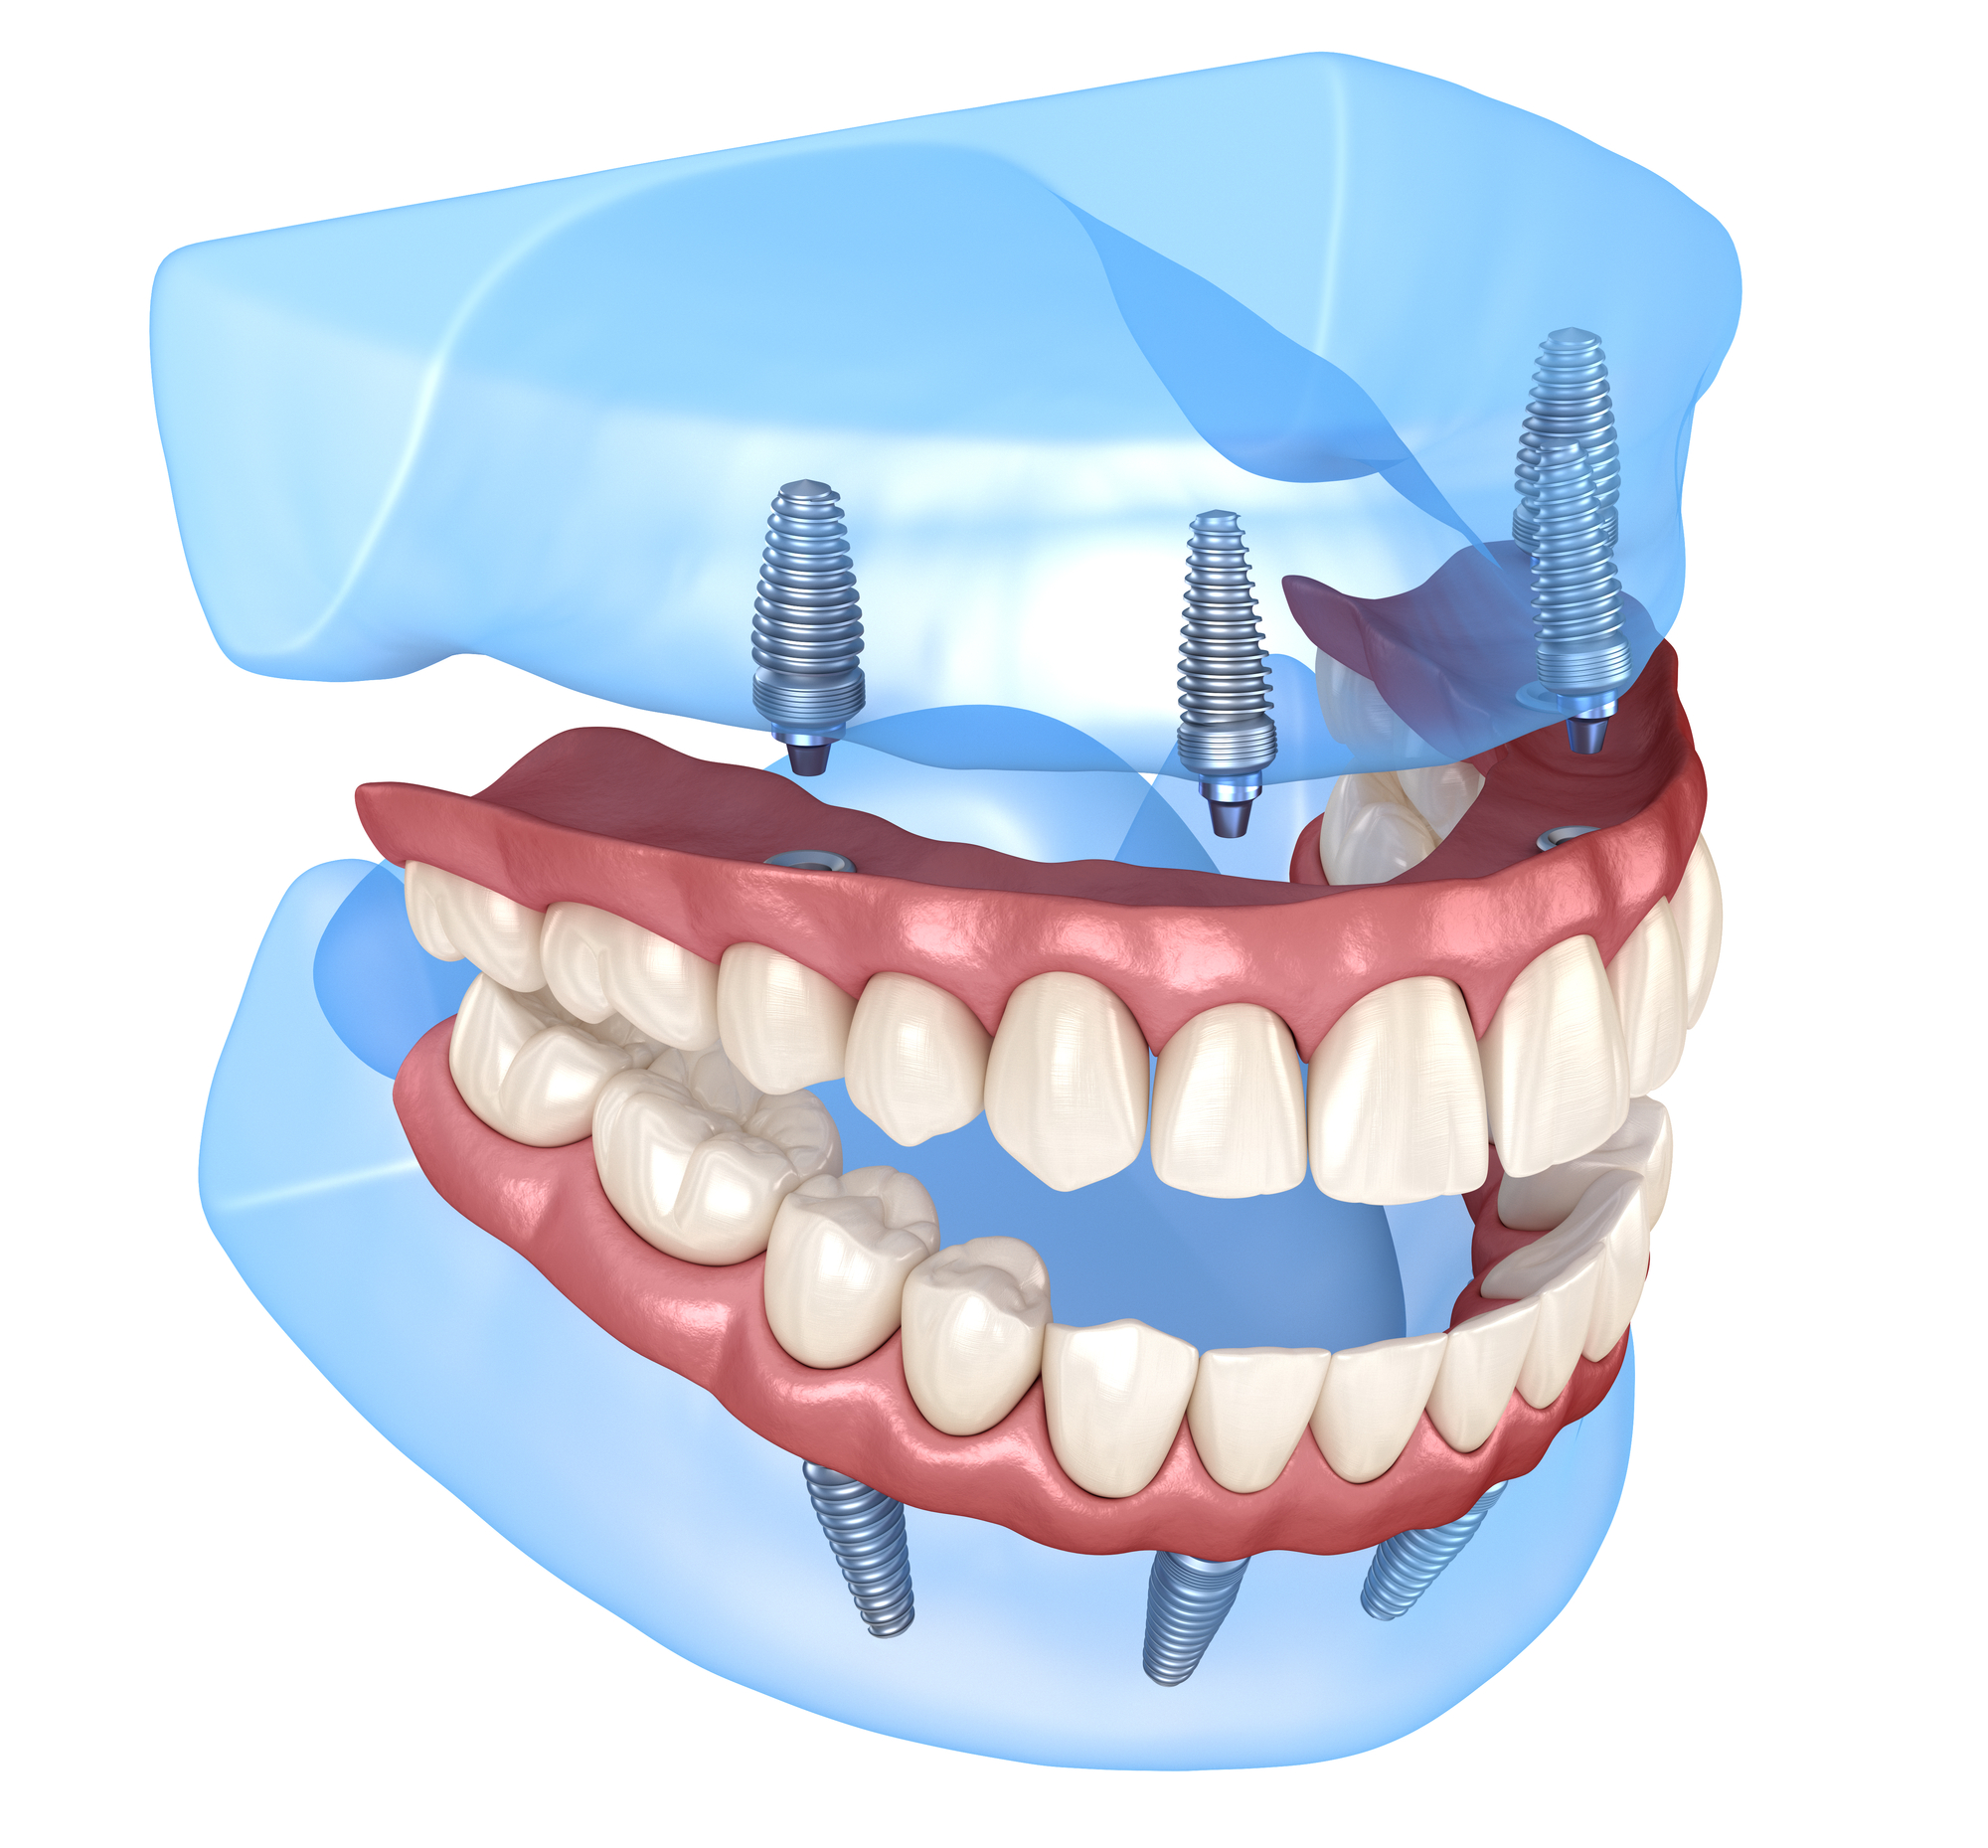 השתלת שיניים בשיטה הבזאלית